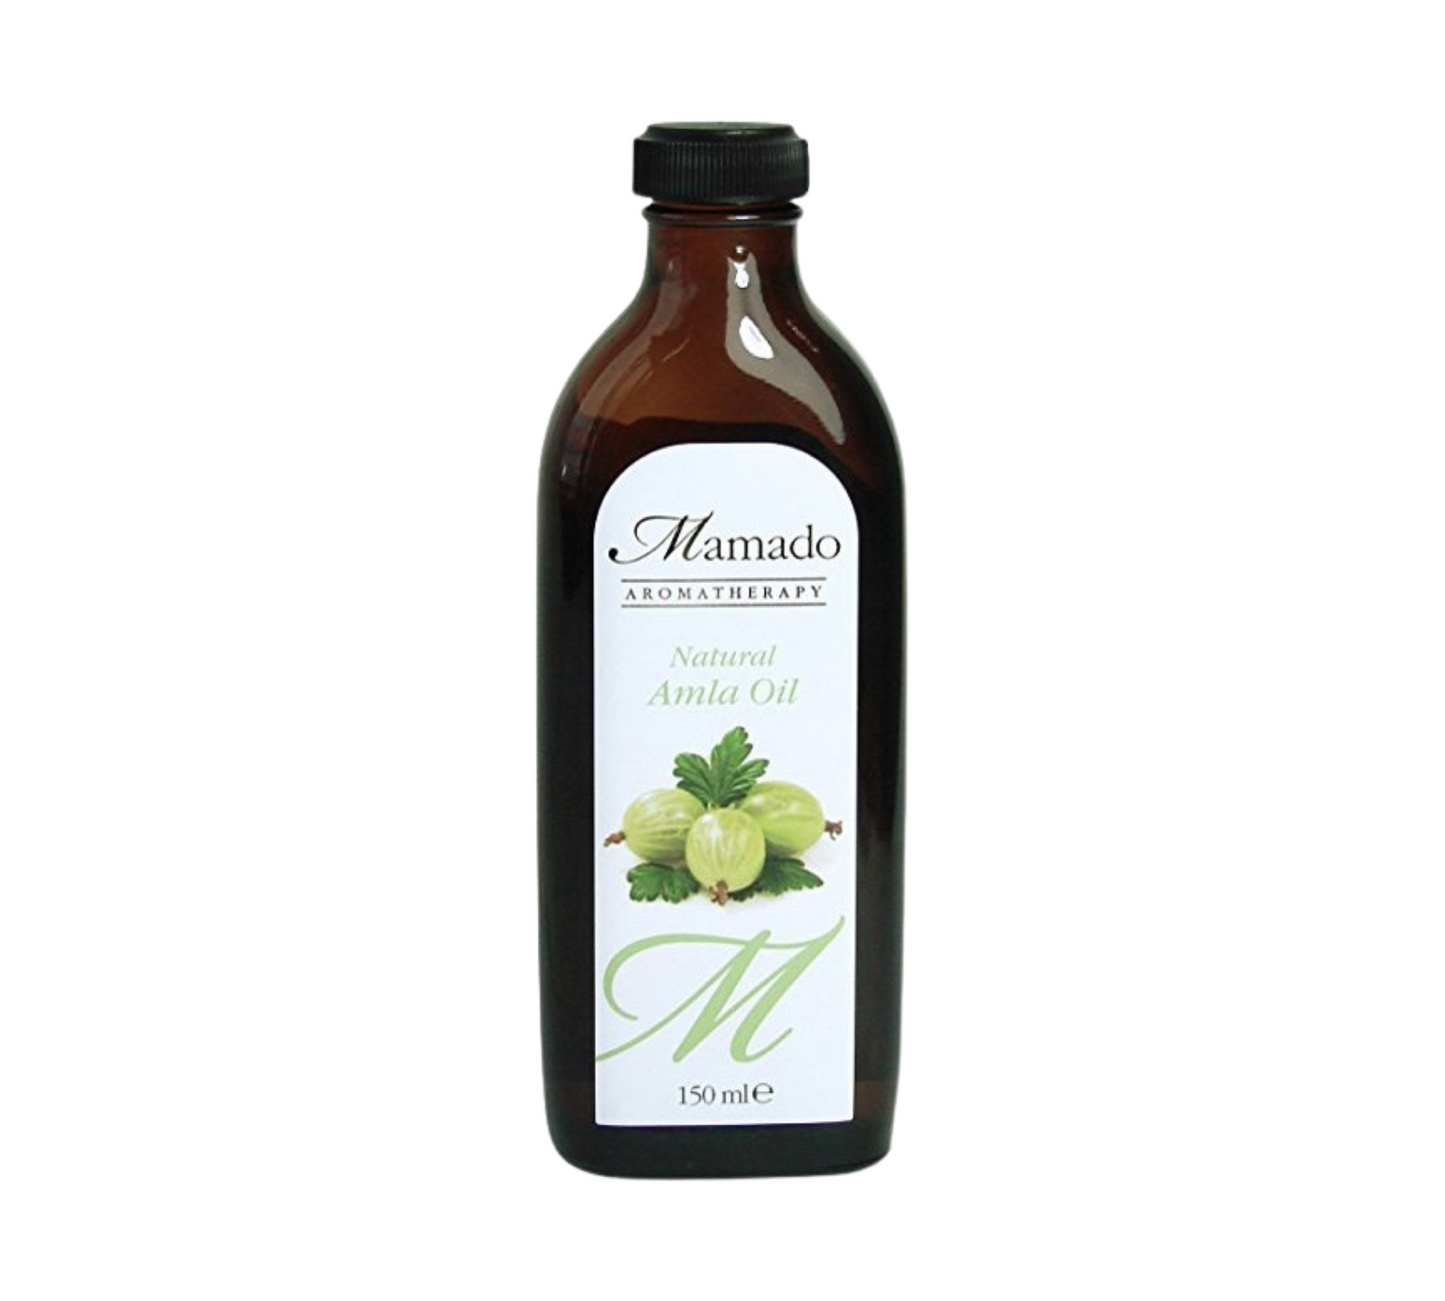 Mamado Natural Amla Oil